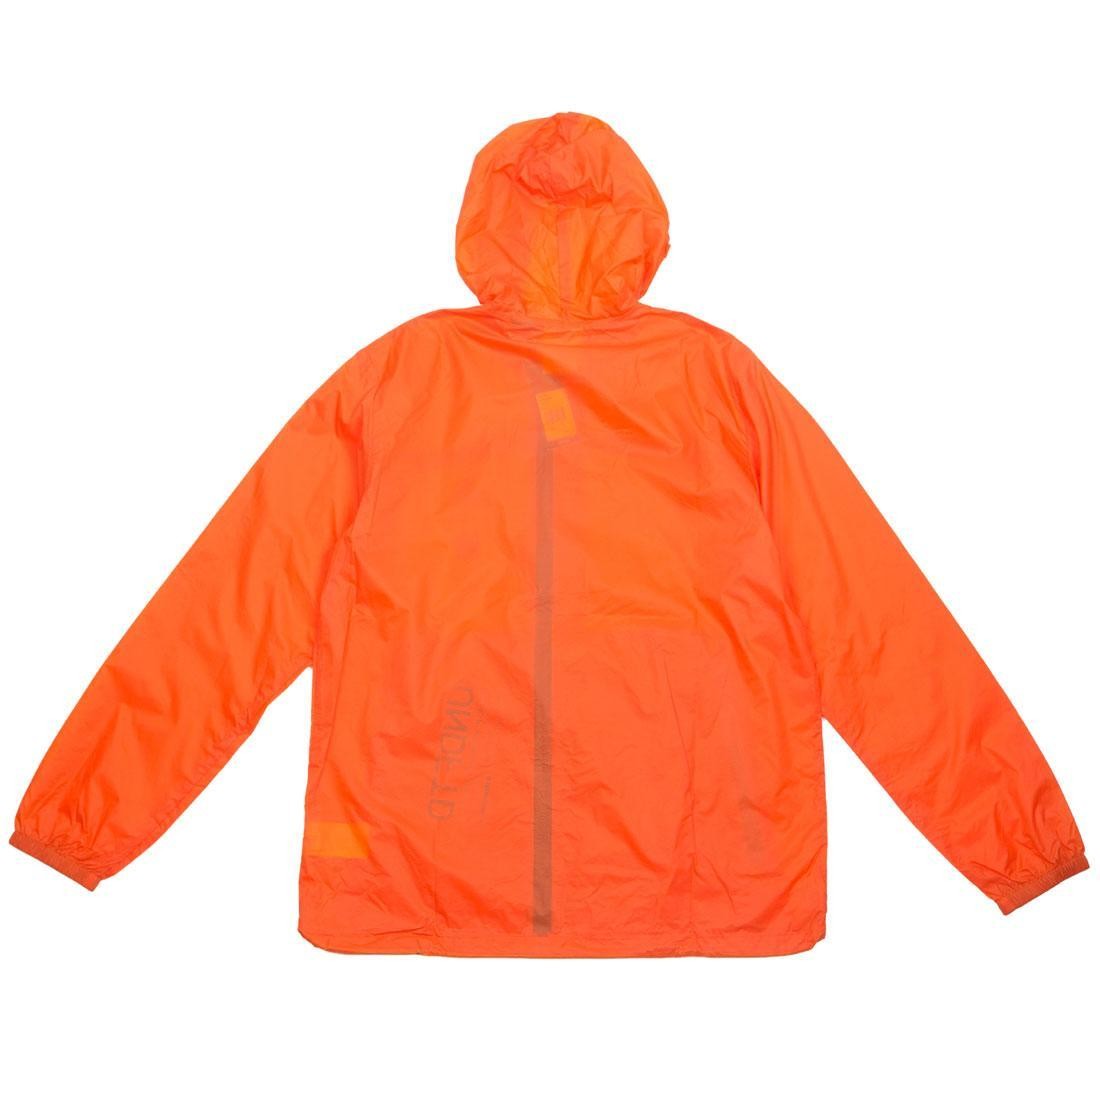 Adidas x Undefeated Men Pack Jacket orange